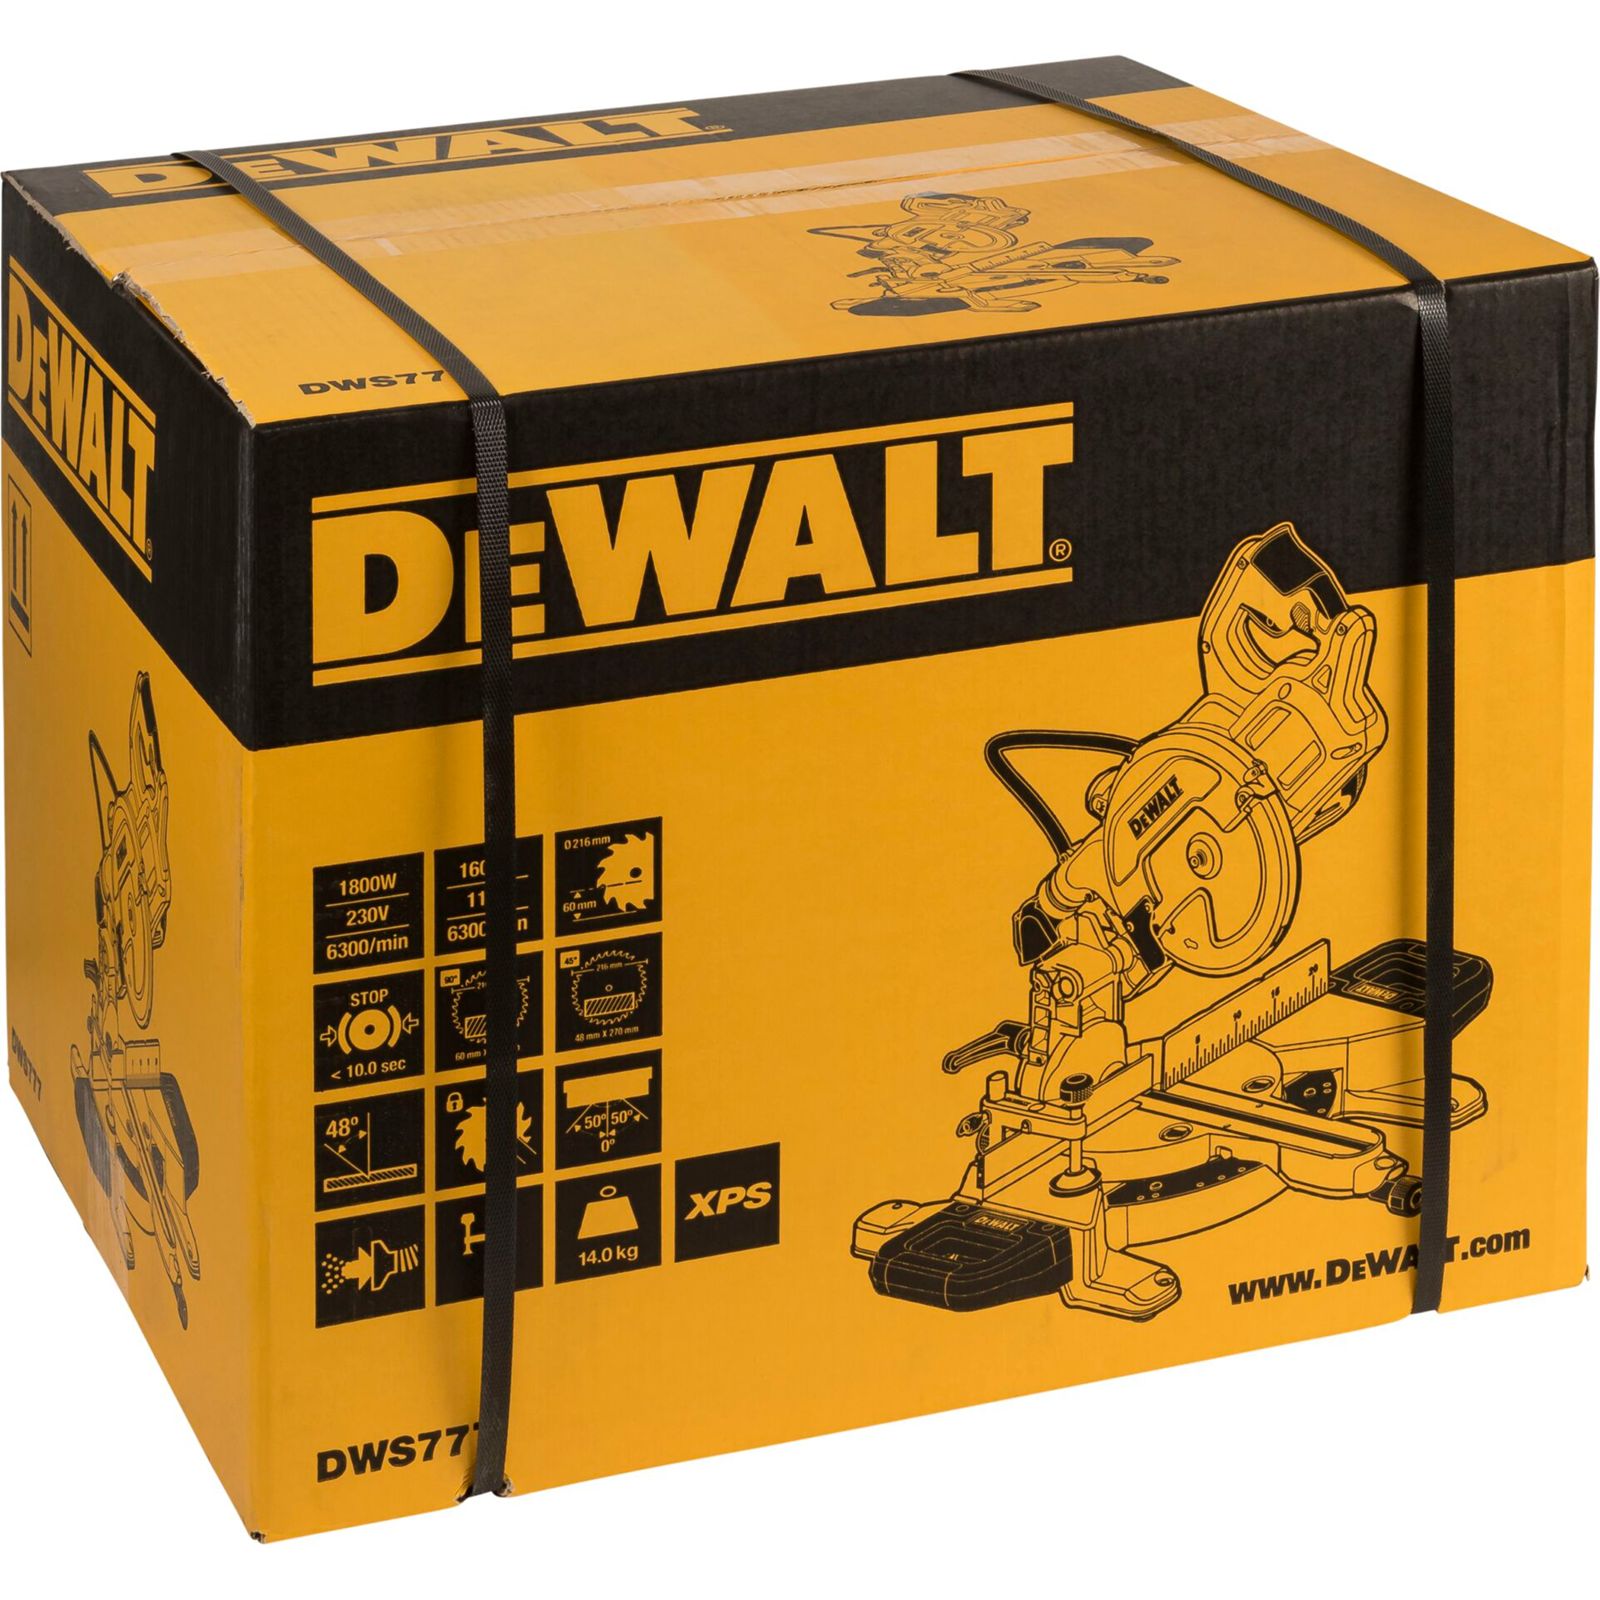 DeWalt DWS777-QS troncatr.rad. 216 mm, 1800 Watt